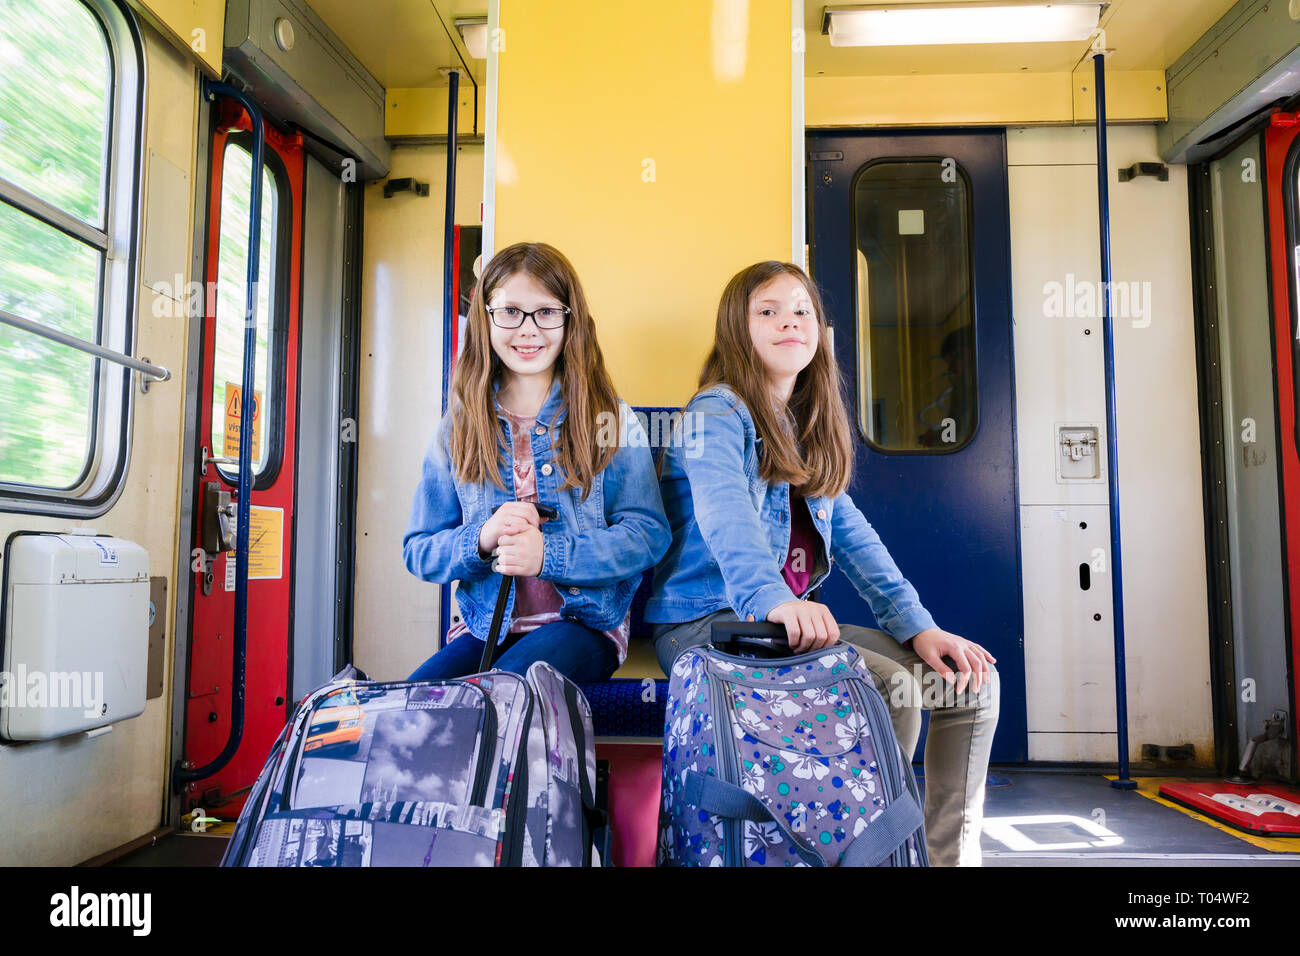 Deux happy smiling girl enfants ou jeunes adolescents avec des sacs à roulettes valise cabine assis sur un train roulant à grande vitesse en République tchèque, l'Europe centrale Banque D'Images